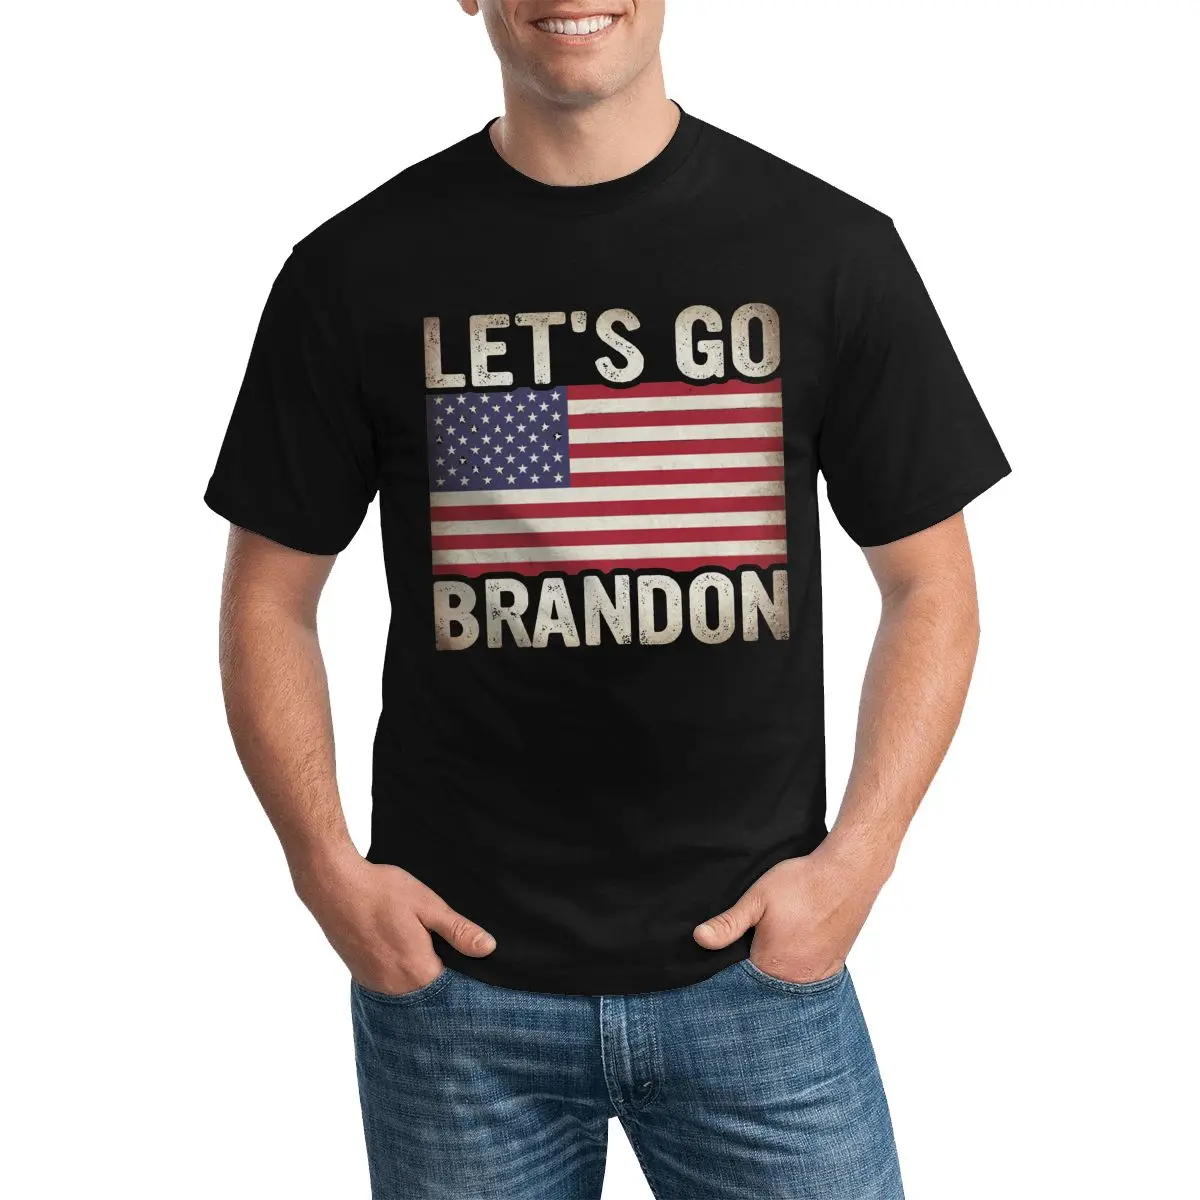 

Футболки Брендона от Let's Go, новая футболка с круглым вырезом и цитатами президента, Классическая пляжная Мужская футболка